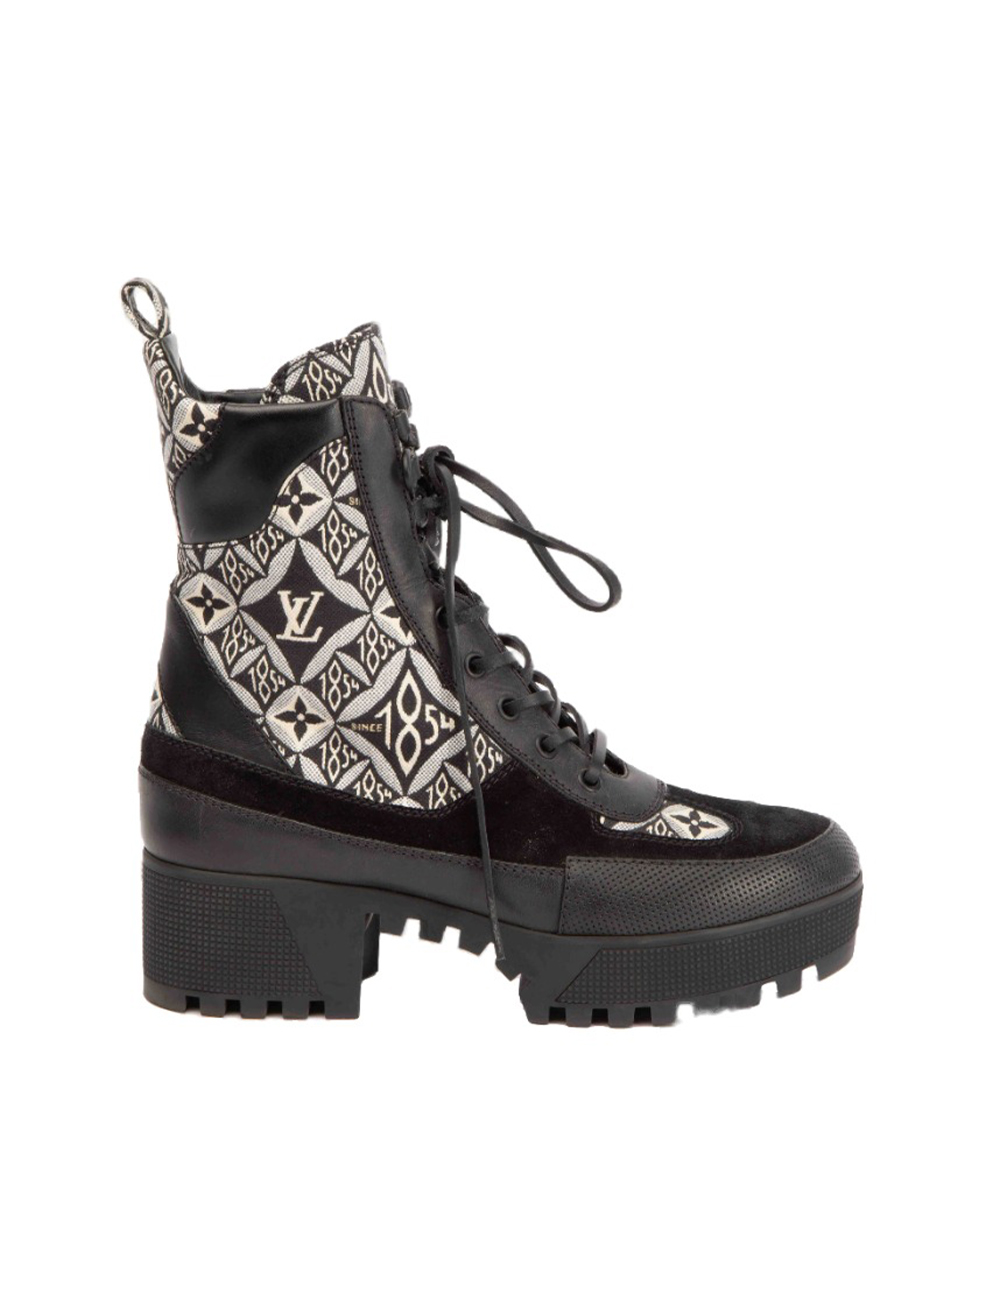 Louis Vuitton platform Laureate Desert black white mesh lace up ankle boots  39